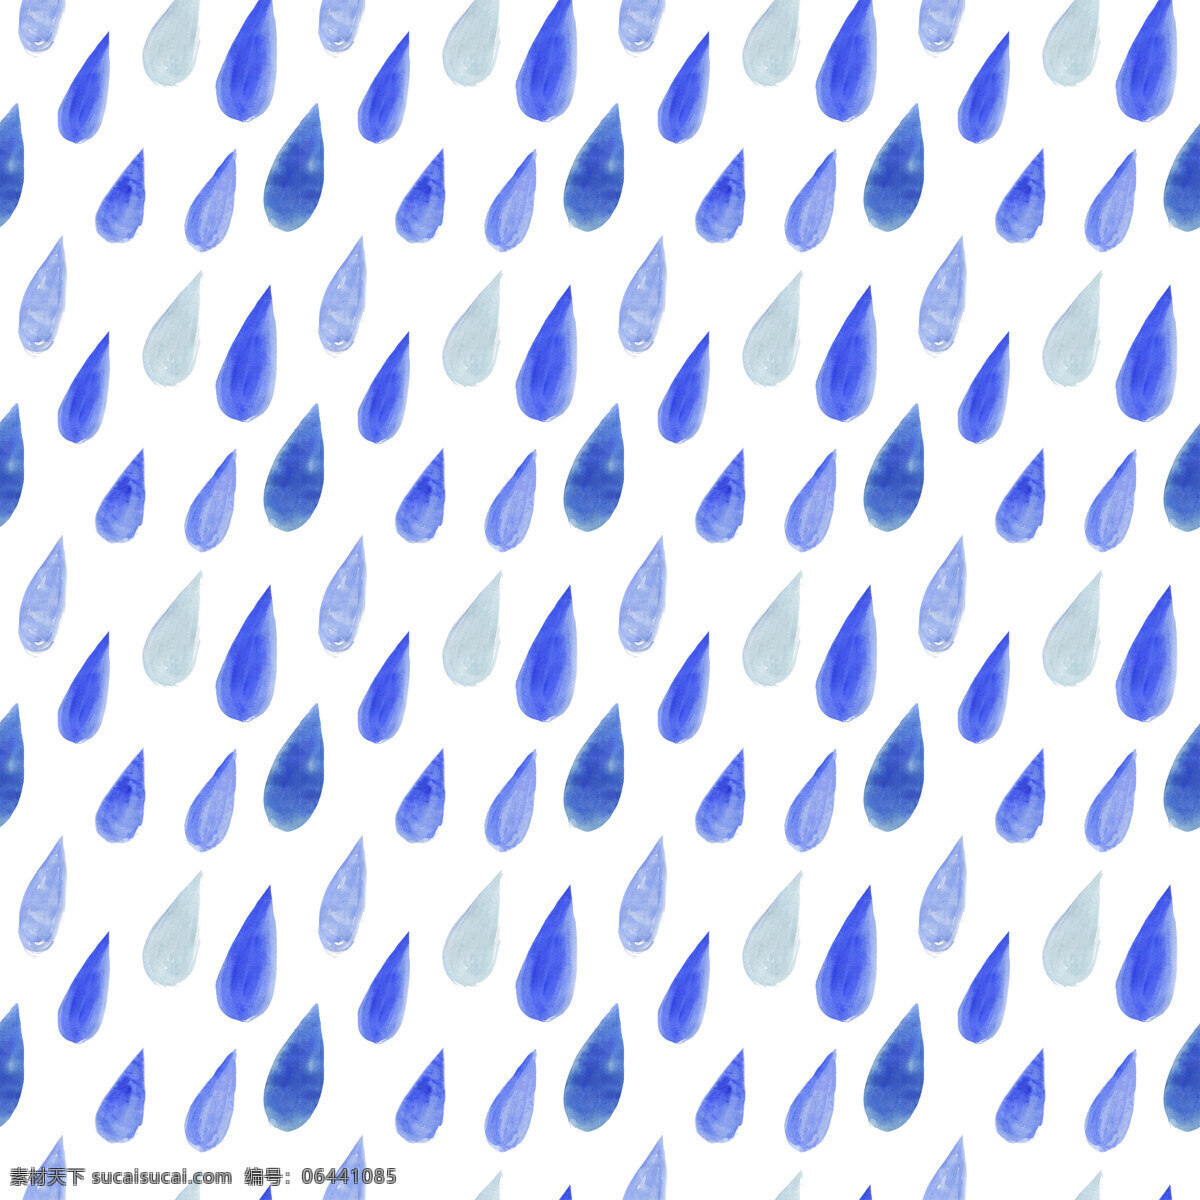 水彩画 雨滴 水彩画的雨滴 背景图片